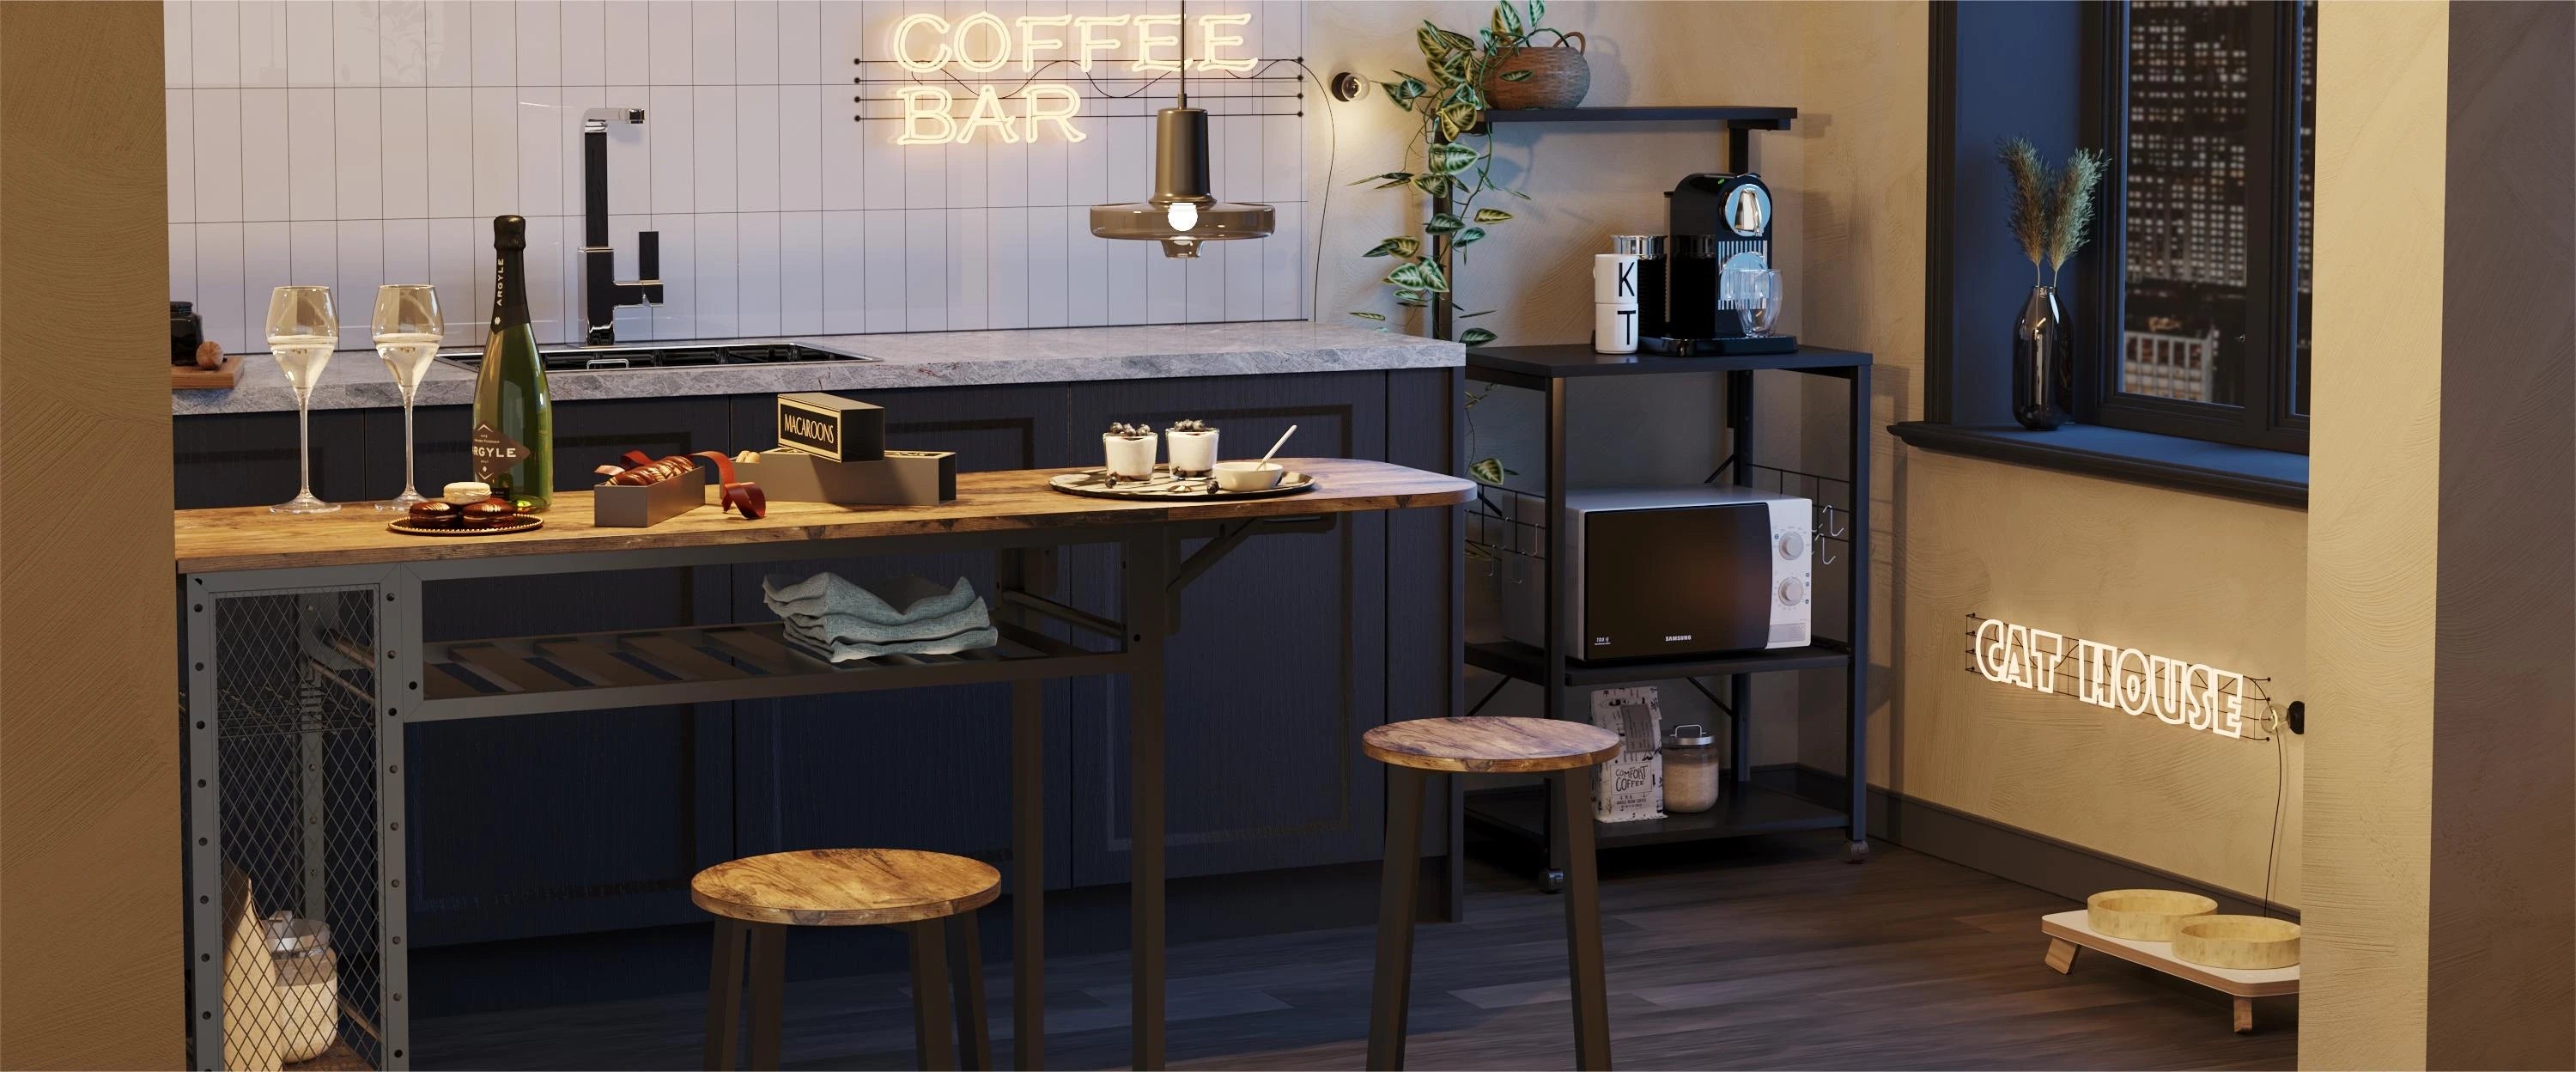 Bestier-Kitchen-Coffee-Bar-Cabinet-Station-Furniture Bestier